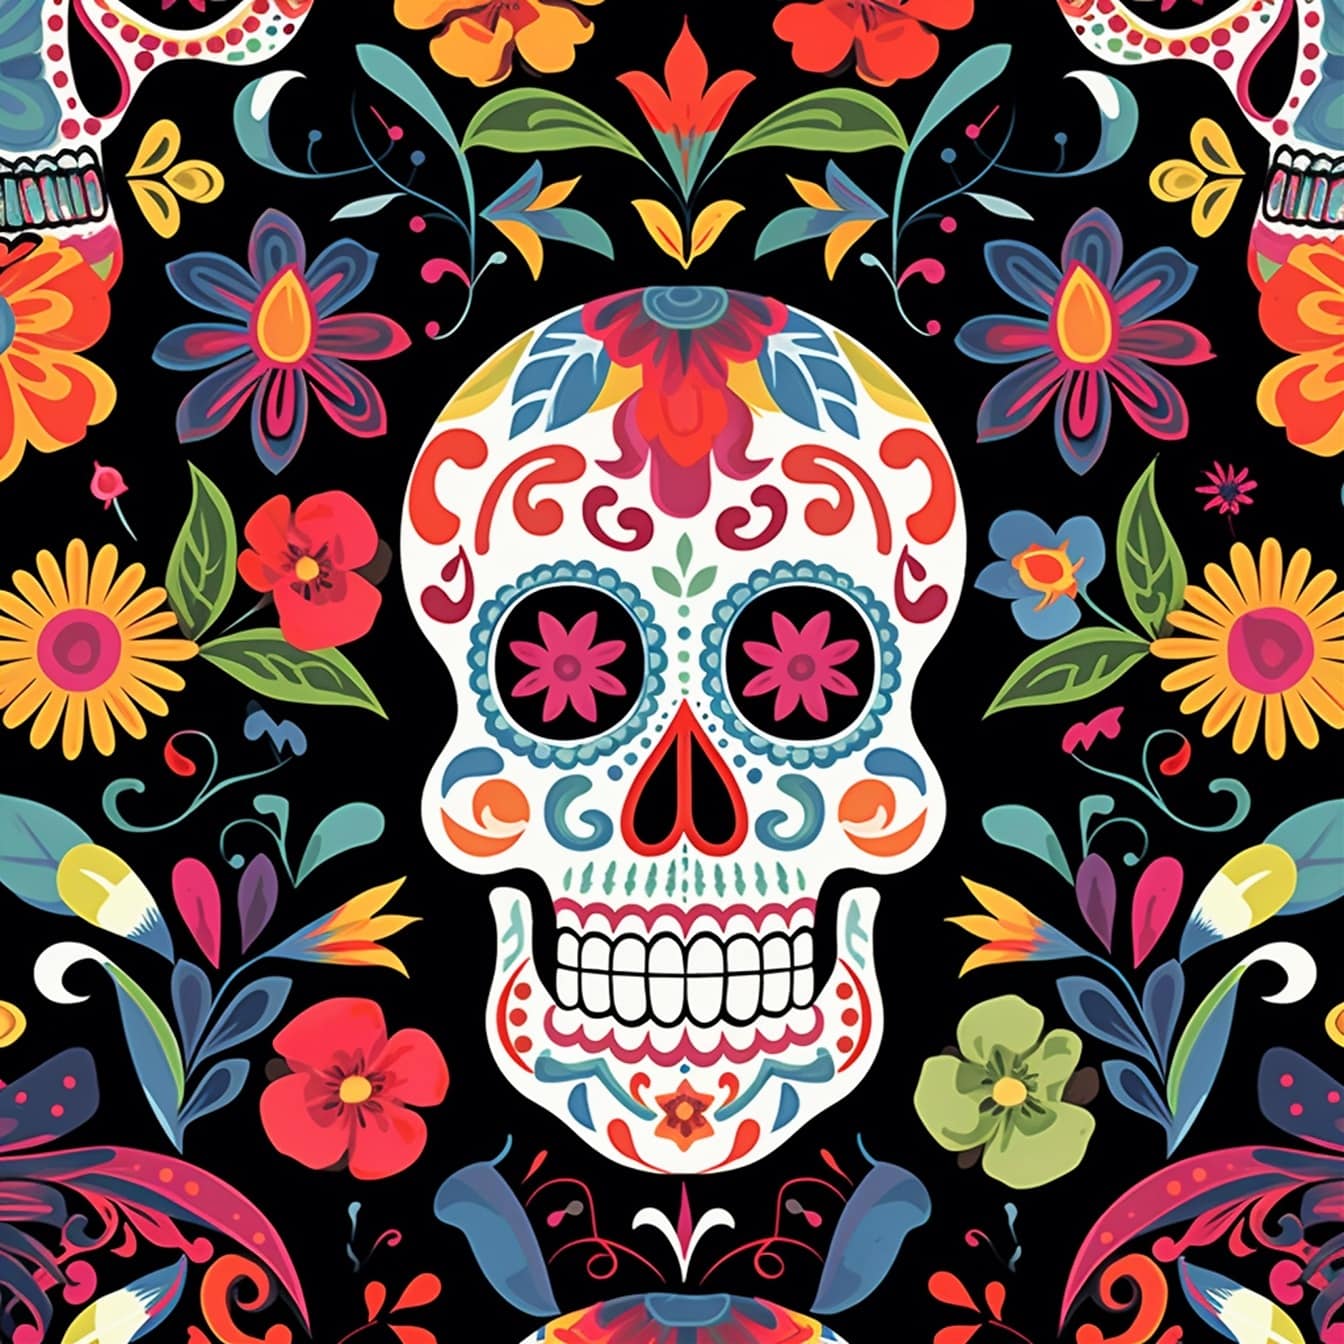 멕시코 자유형 빈티지 두개골 장식 그림